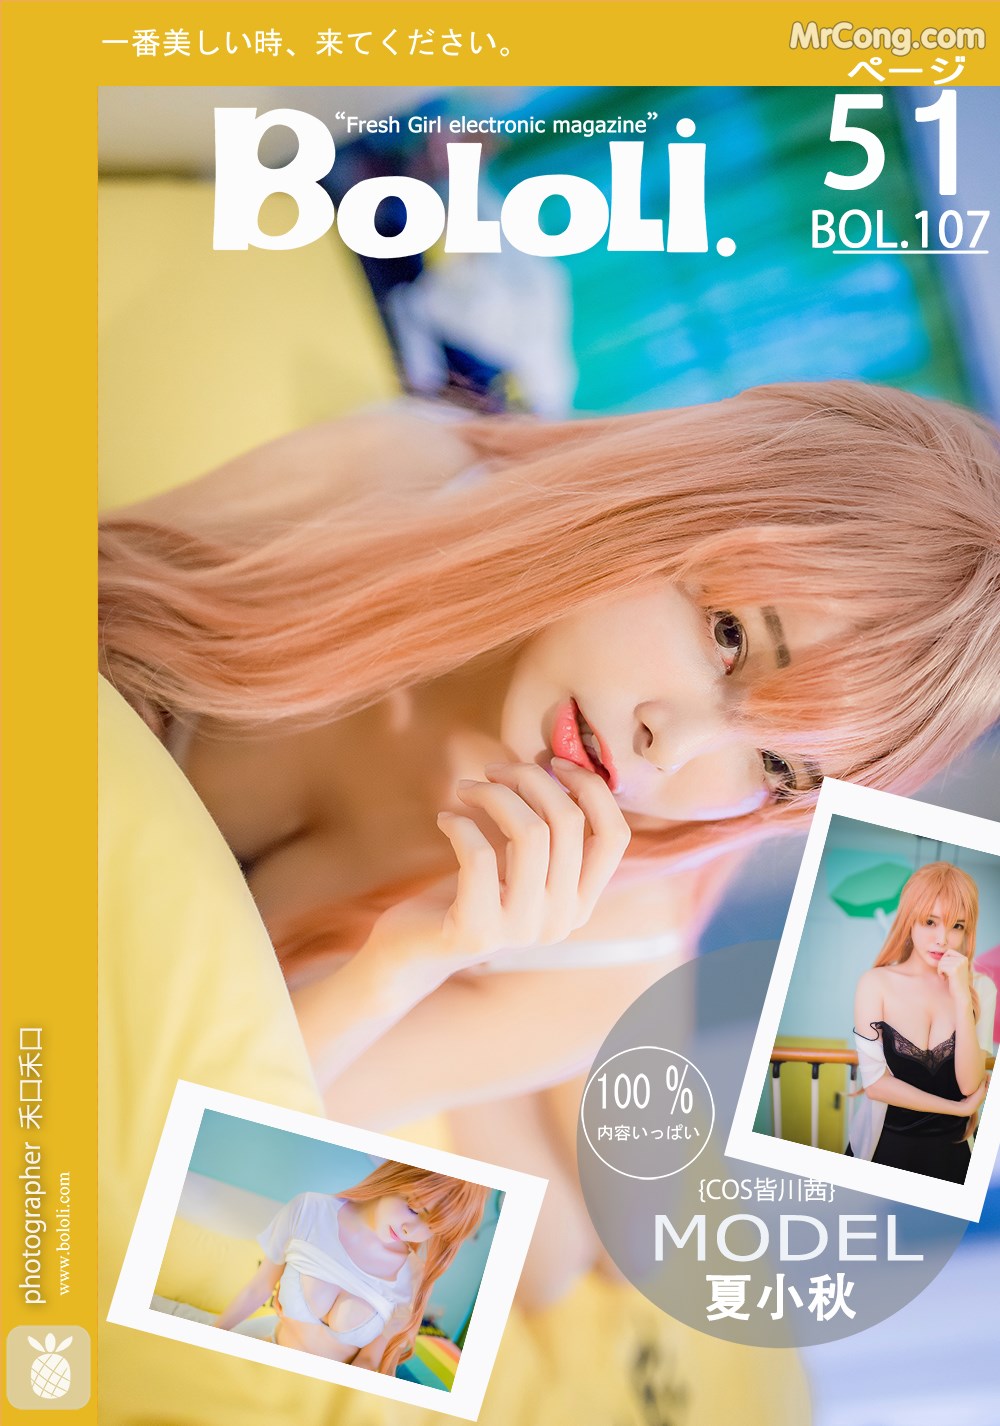 BoLoli 2017-08-16 Vol.107: Model Xia Xiao Qiu Qiu Qiu (夏小秋 秋秋) (52 photos) photo 1-0